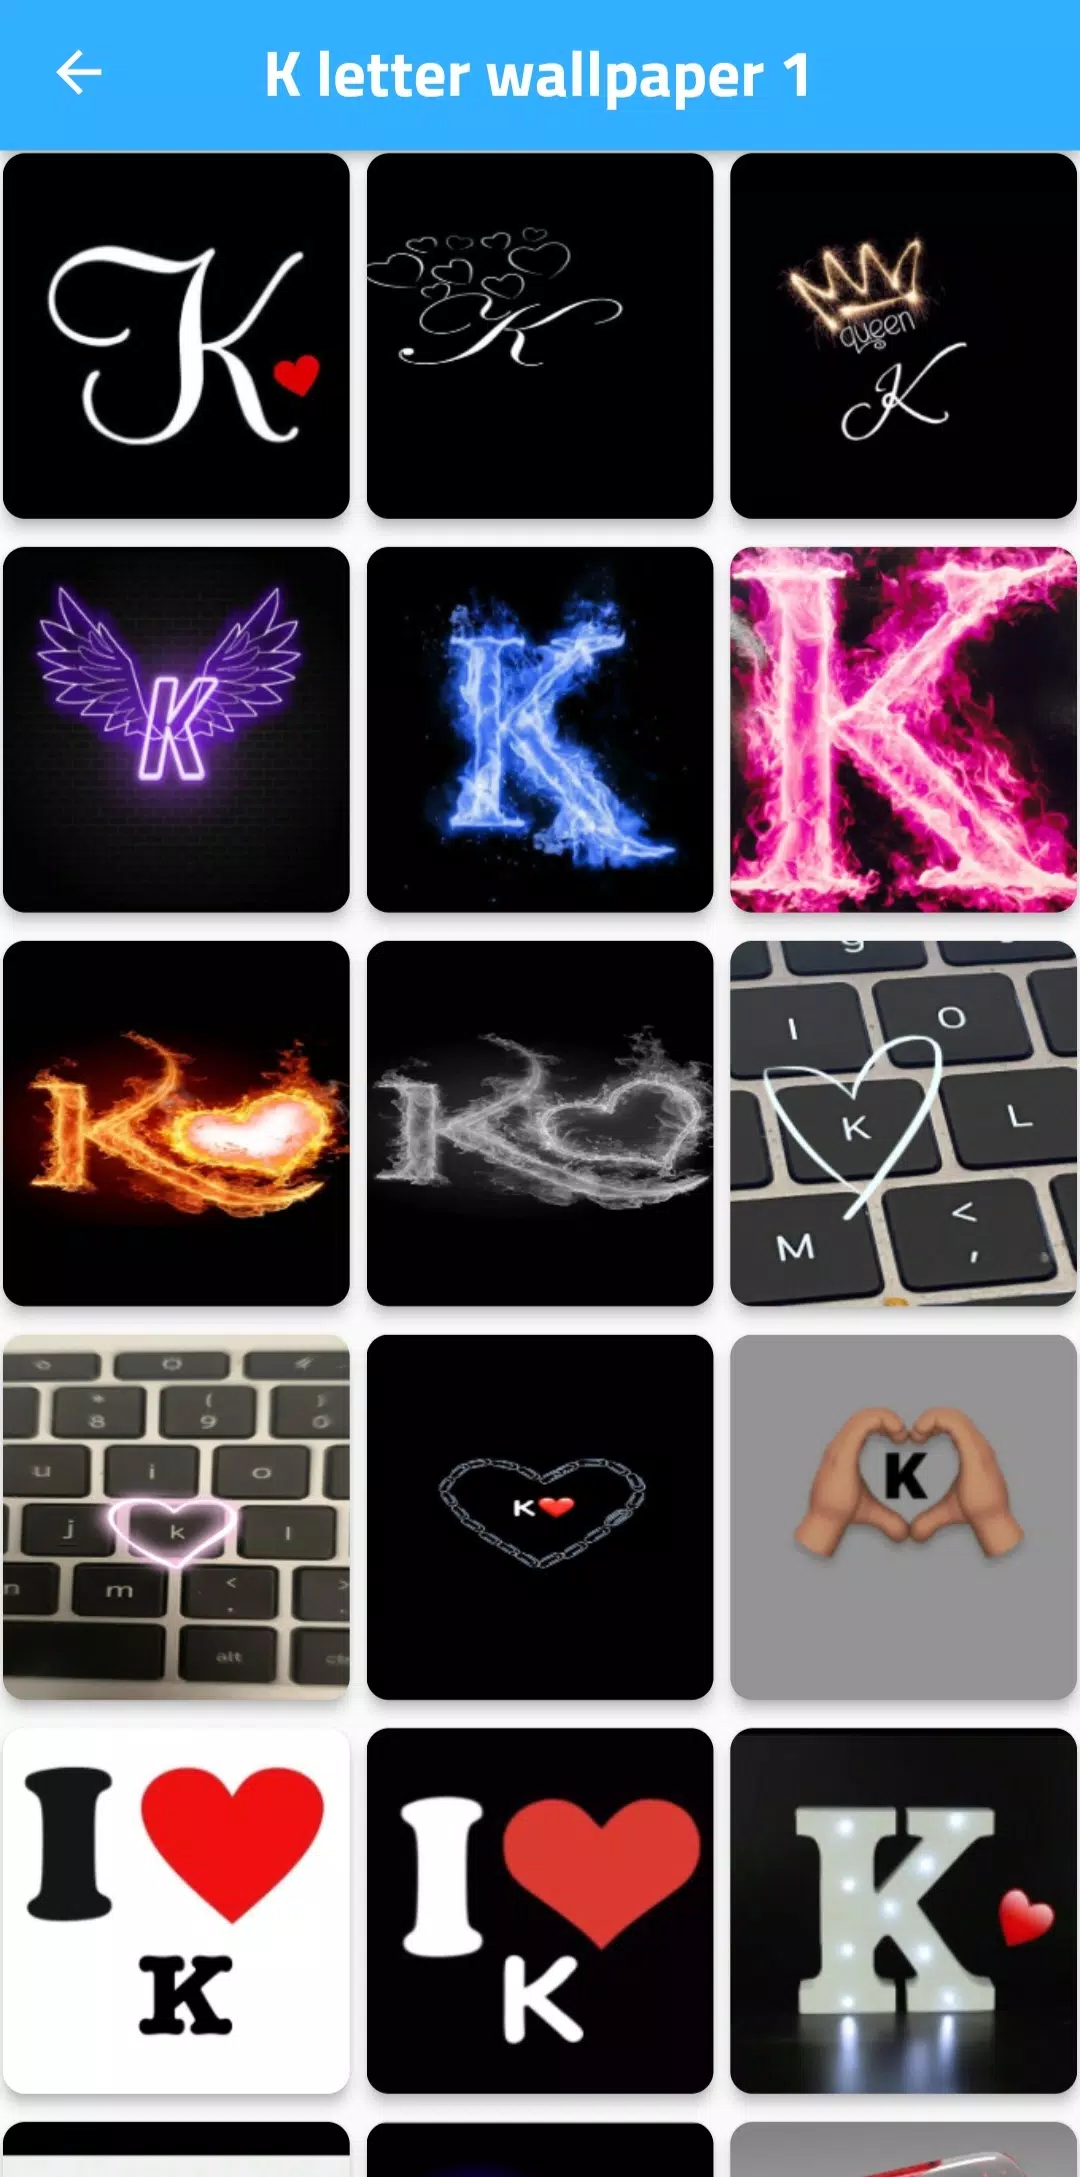 k letter wallpapers